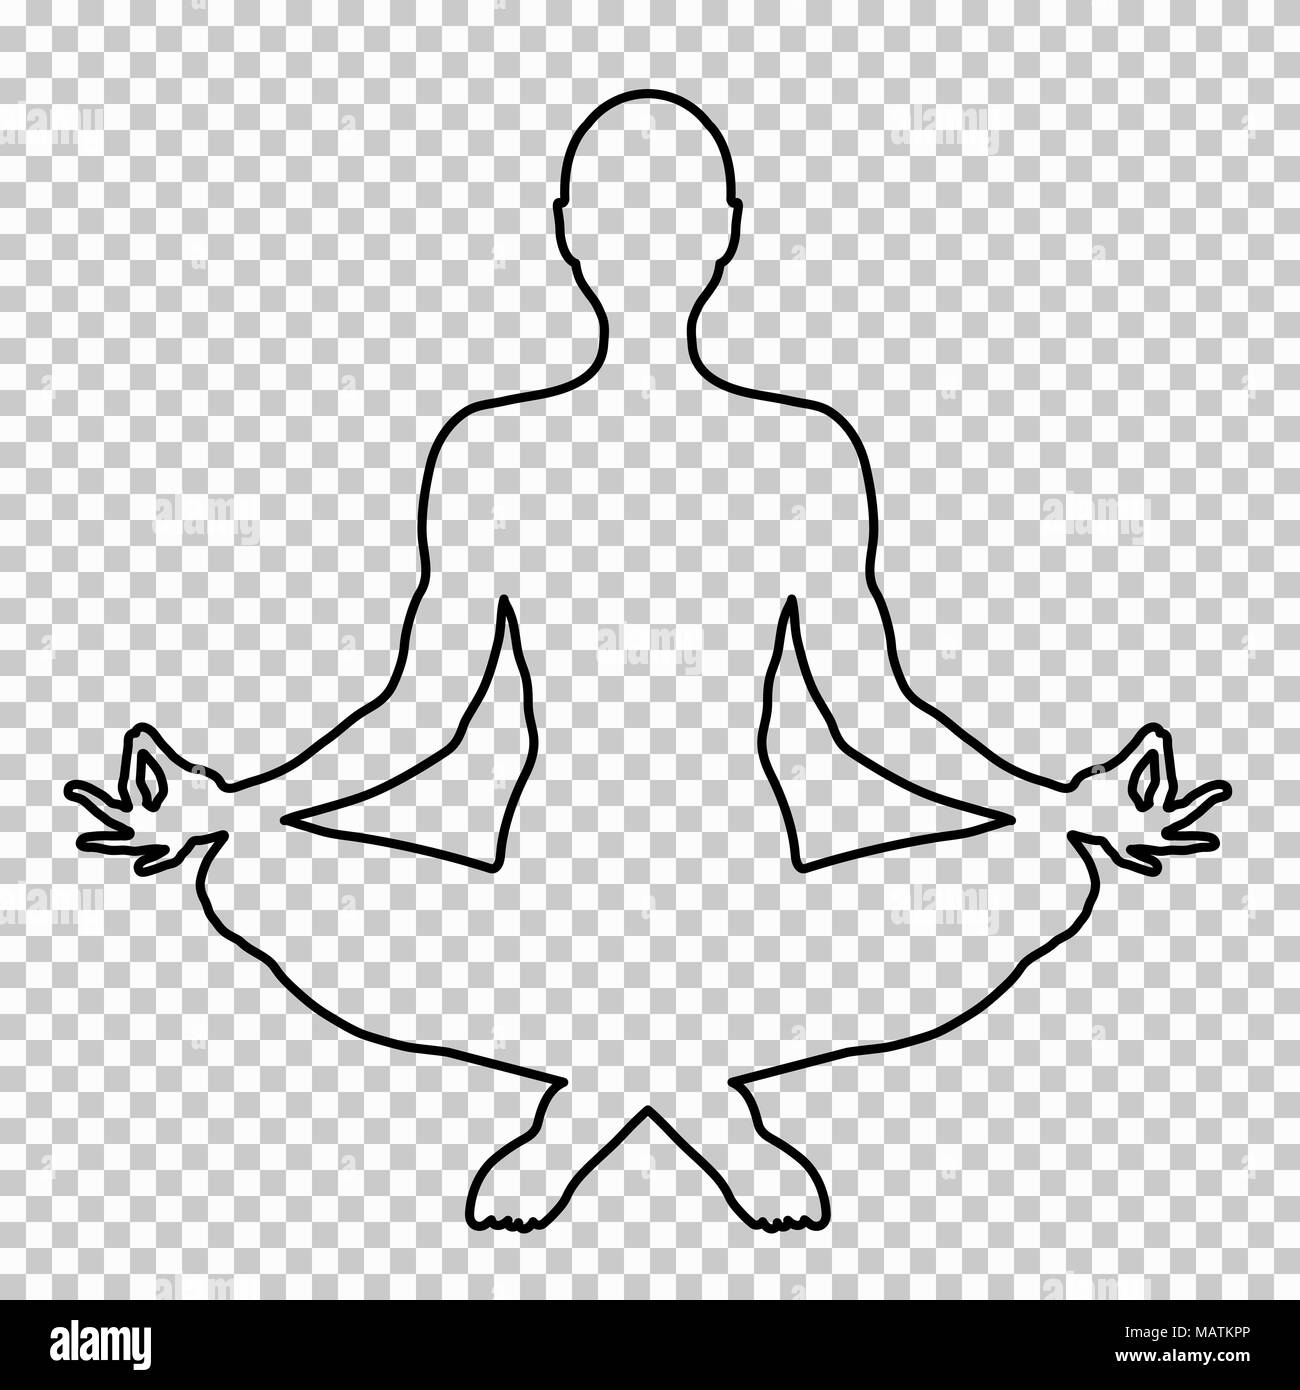 Überblick Abbildung eines Mannes sitzt im Lotussitz auf einem transparenten Hintergrund, Schablone, Yogi Silhouette. Meditation menschliche, Form, Linie Portrait, schwarze und weiße Kontur zeichnen. Vector Illustration Stock Vektor